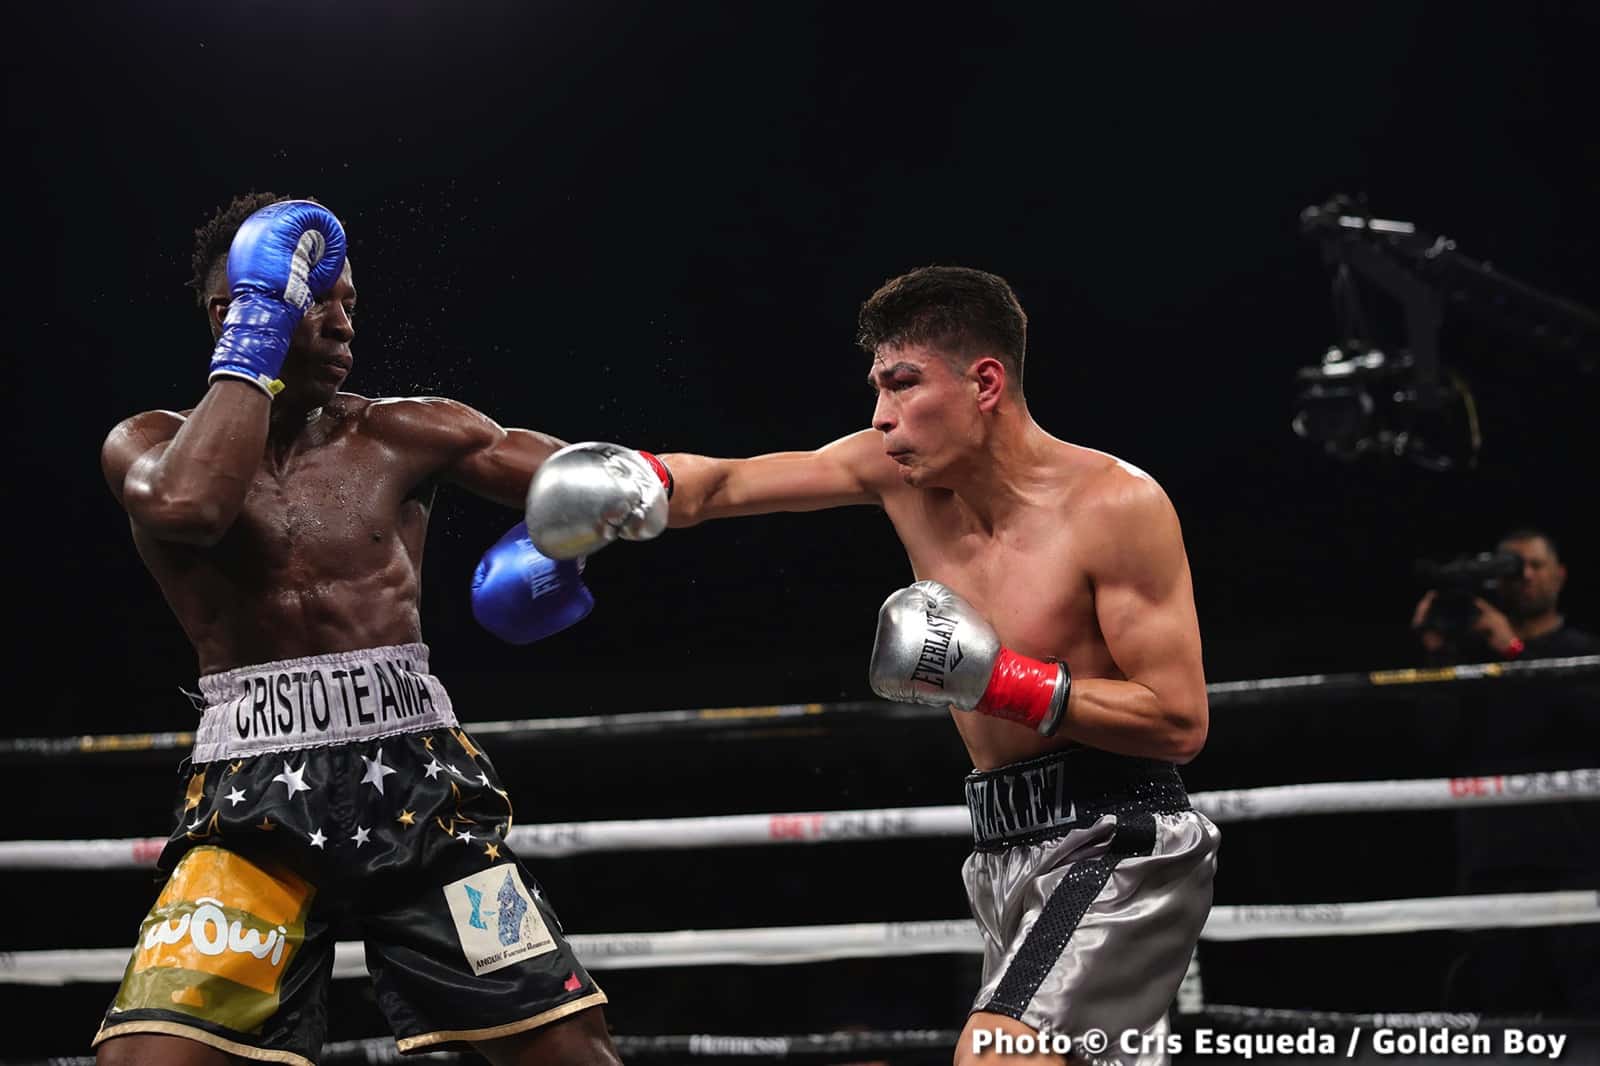 Manuel Flores boxing image / photo